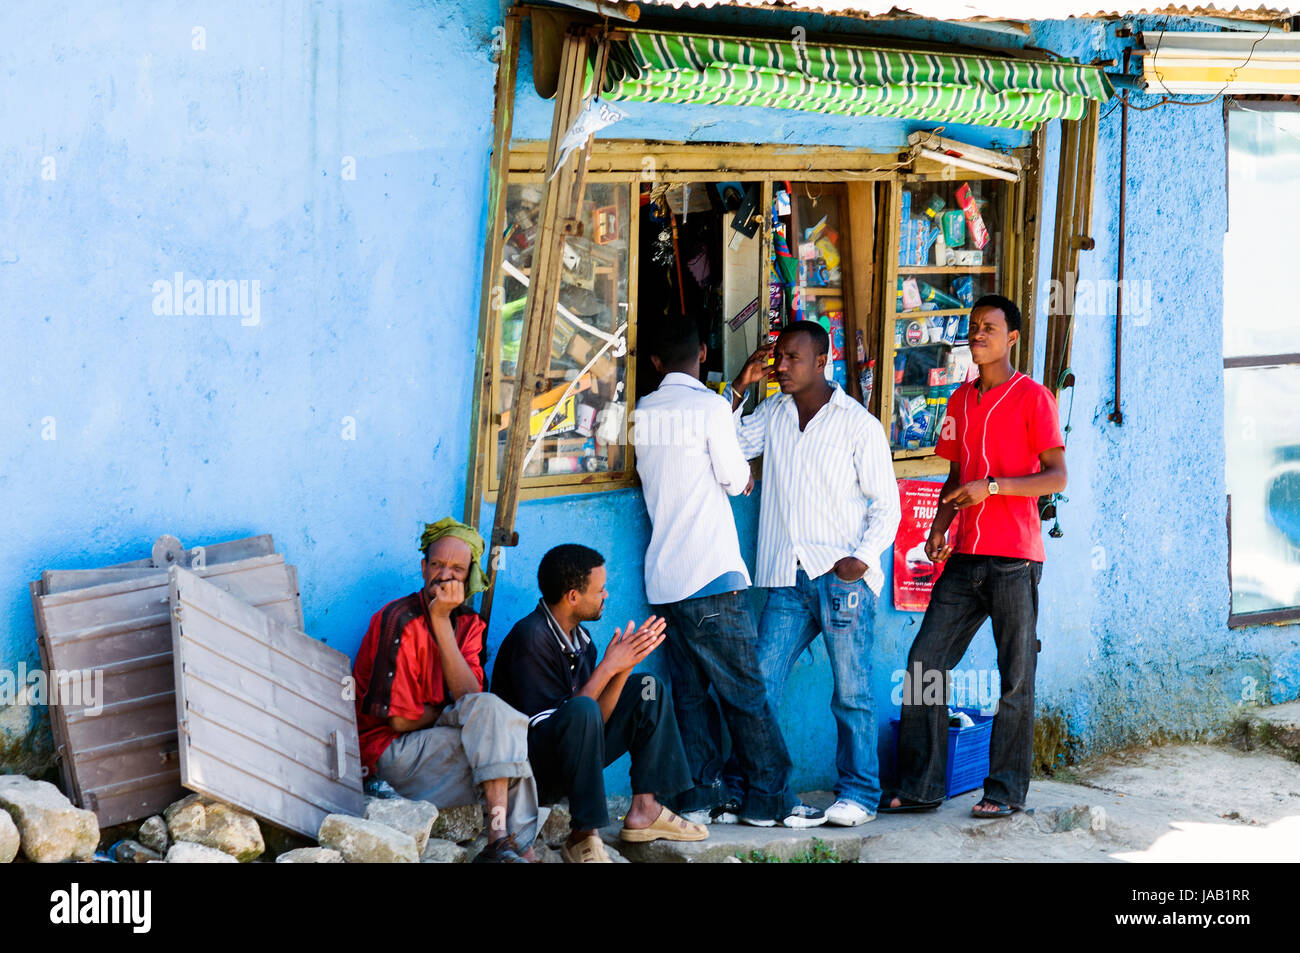 Escena de una calle con tiendas pequeñas, Piazza, en Addis Abeba, Etiopía Foto de stock